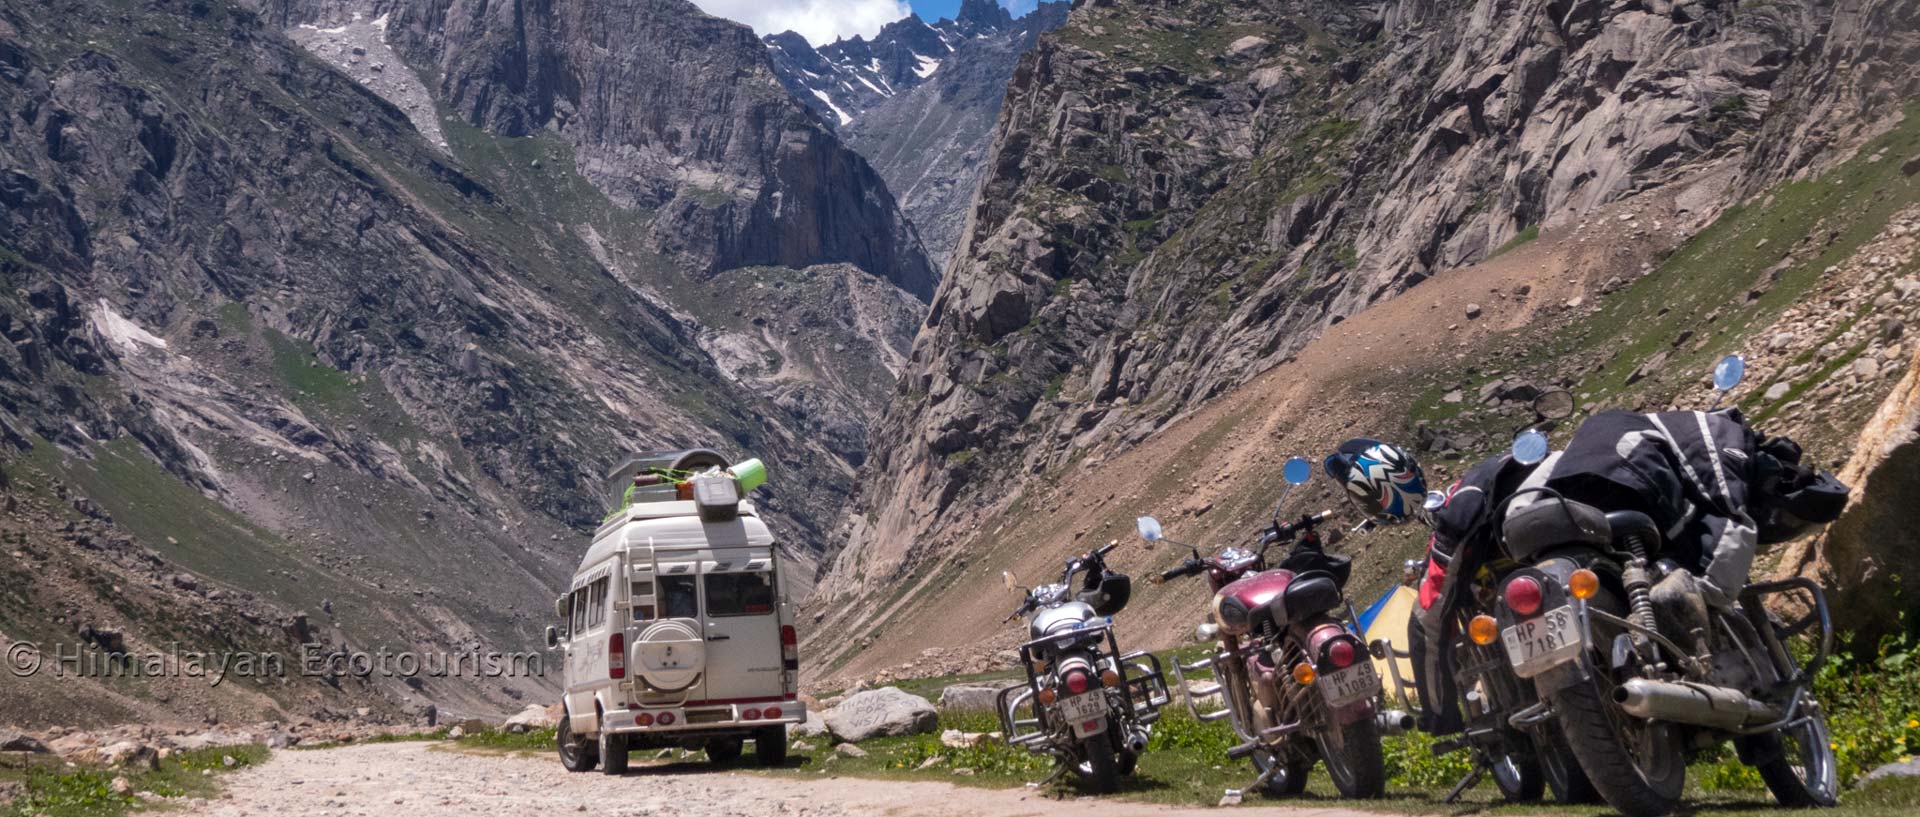 Circuit aventure dans l'Himachal Pradesh avec Himalayan Ecotourism